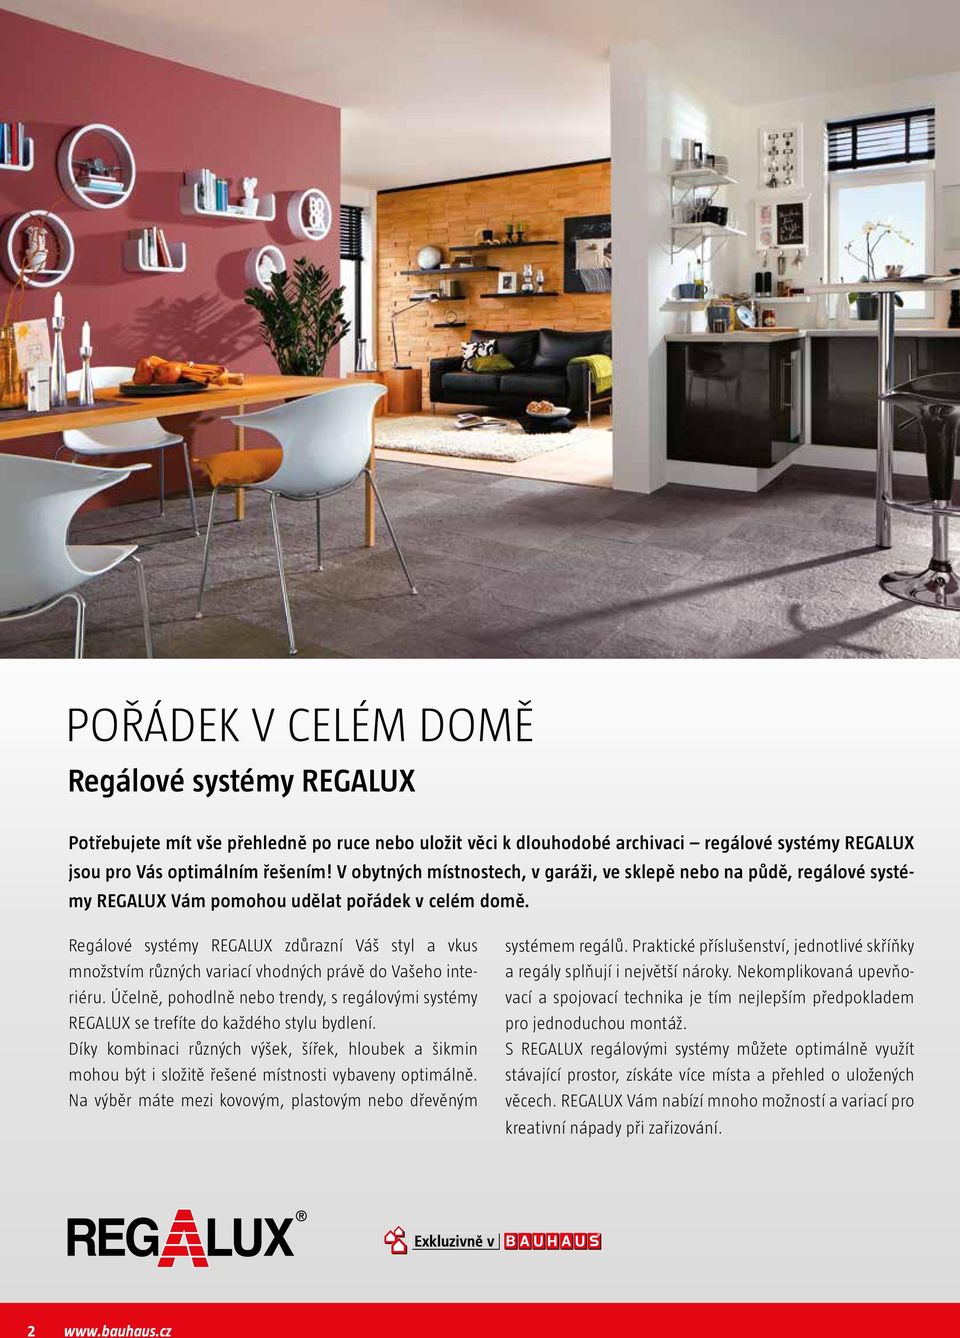 Regálové systémy REGALUX zdůrazní Váš styl a vkus množstvím různých variací vhodných právě do Vašeho interiéru.